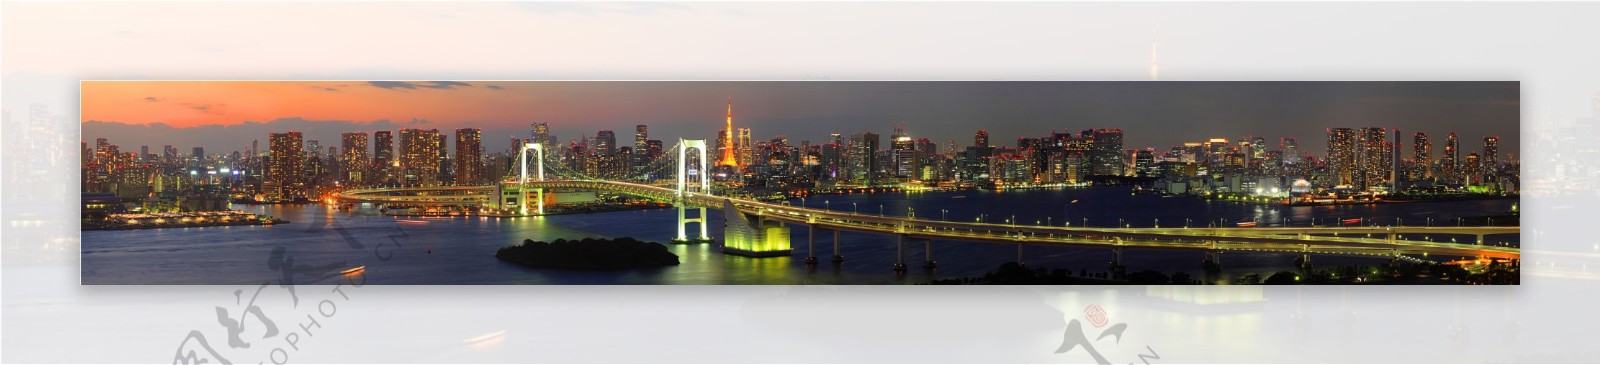 日本彩虹桥全景图片